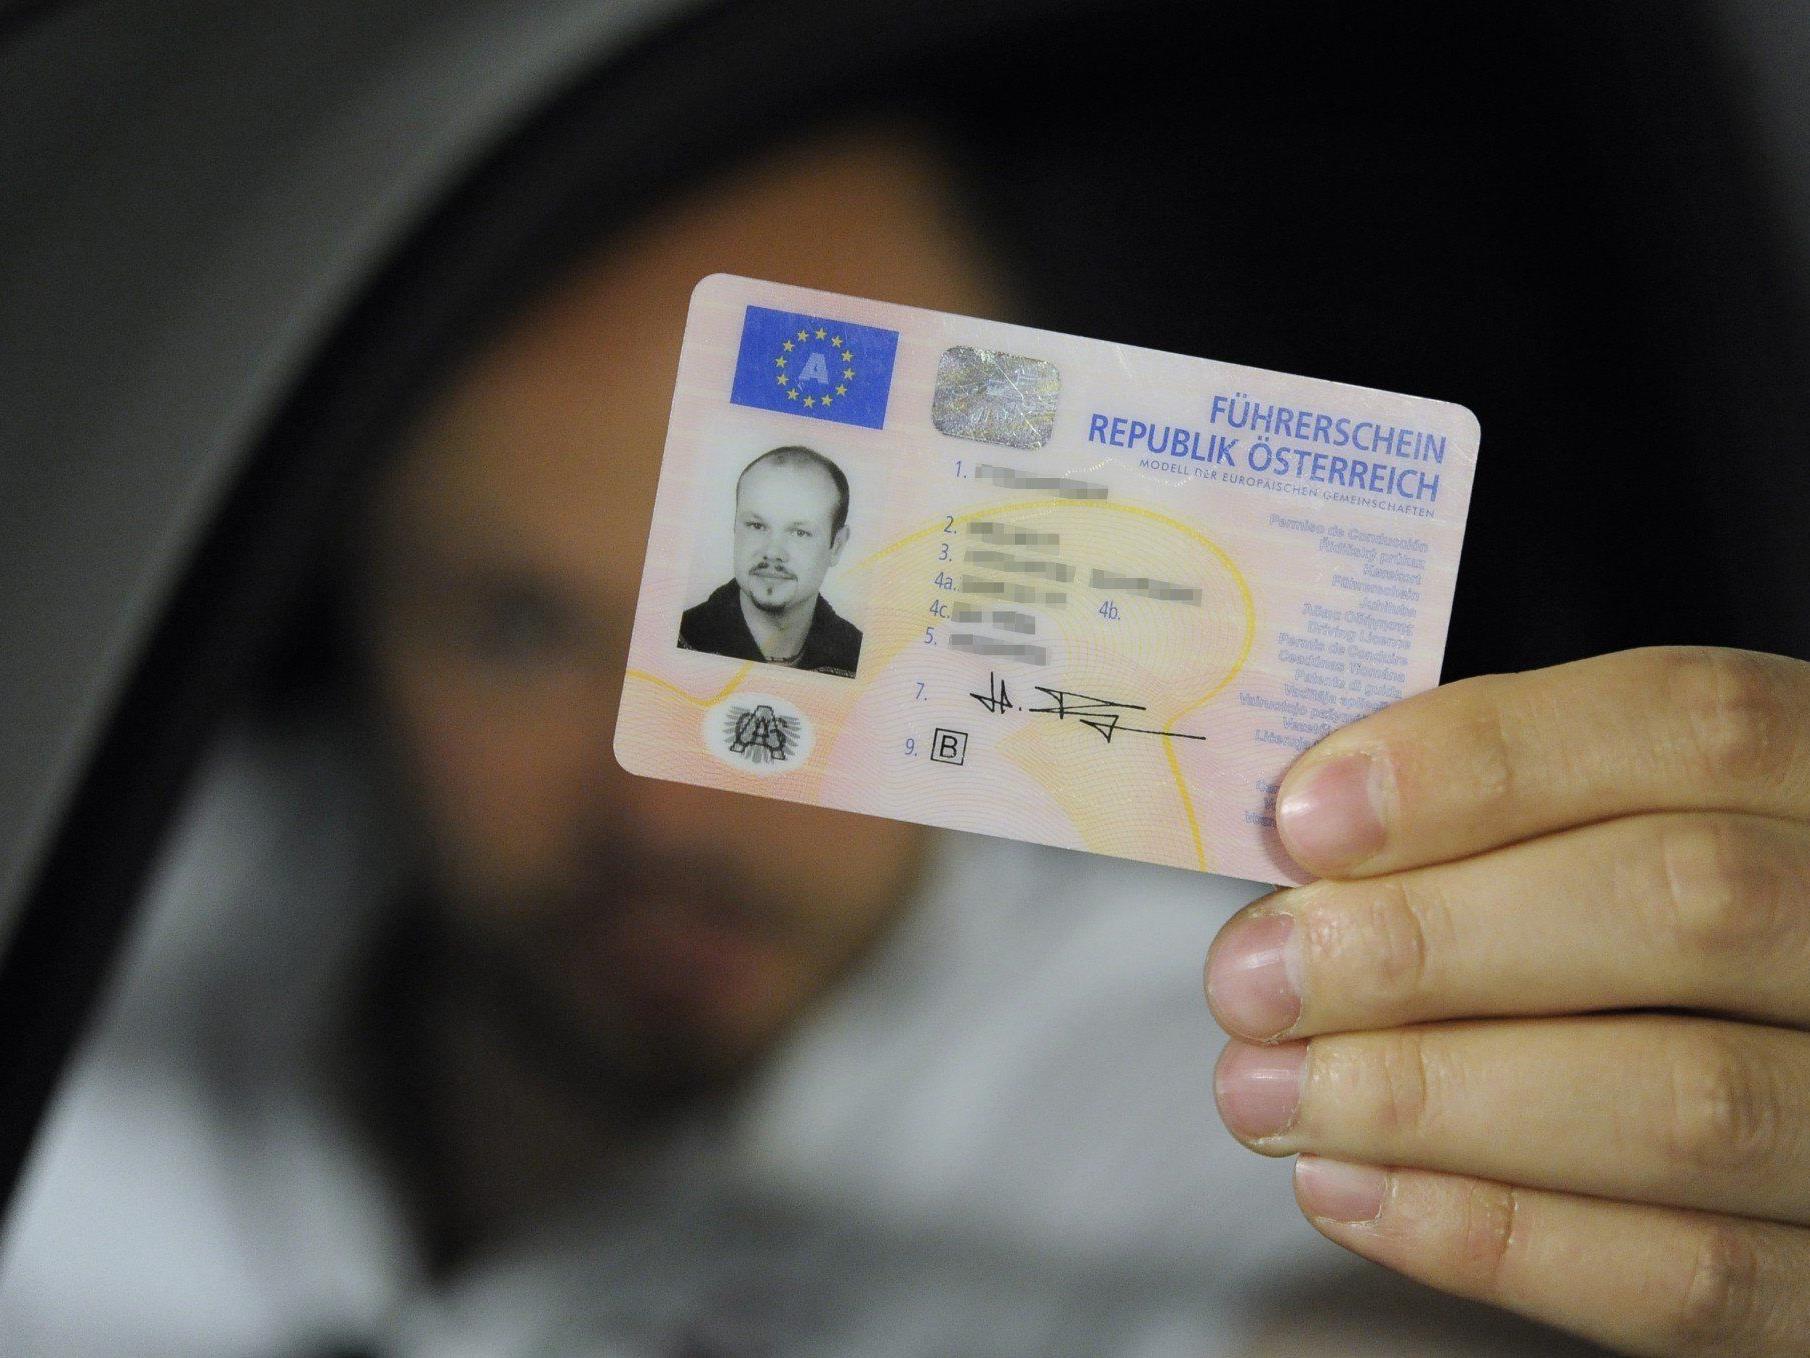 EU-Führerschein: Nach EU-Recht kann man den Führerschein in einem anderen Mitgliedsstaat erwerben. Voraussetzung: der Wohnsitz dort.